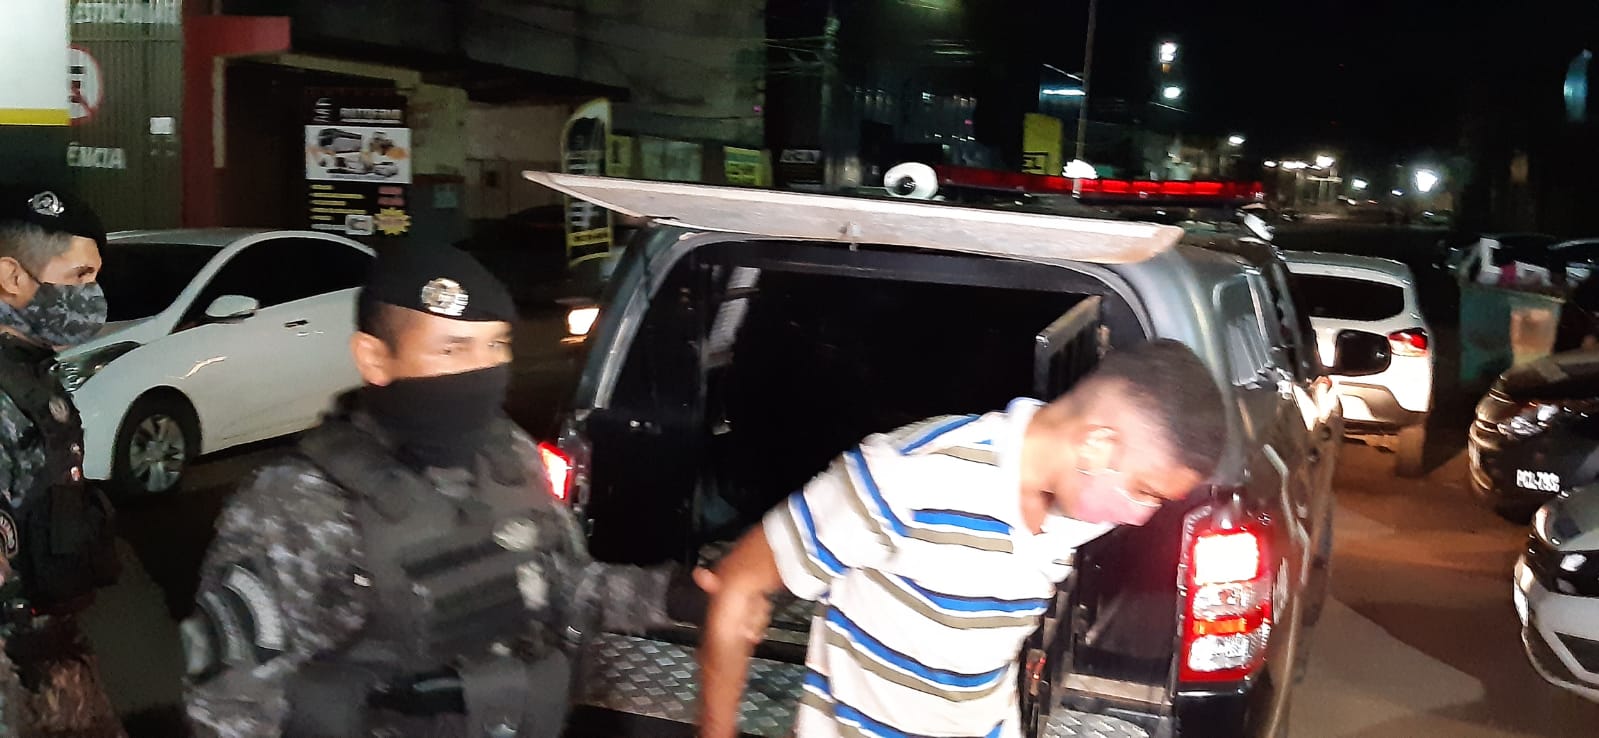 COVARDIA: Criminoso é detido por populares após empurrar vítima cadeirante durante roubo - News Rondônia